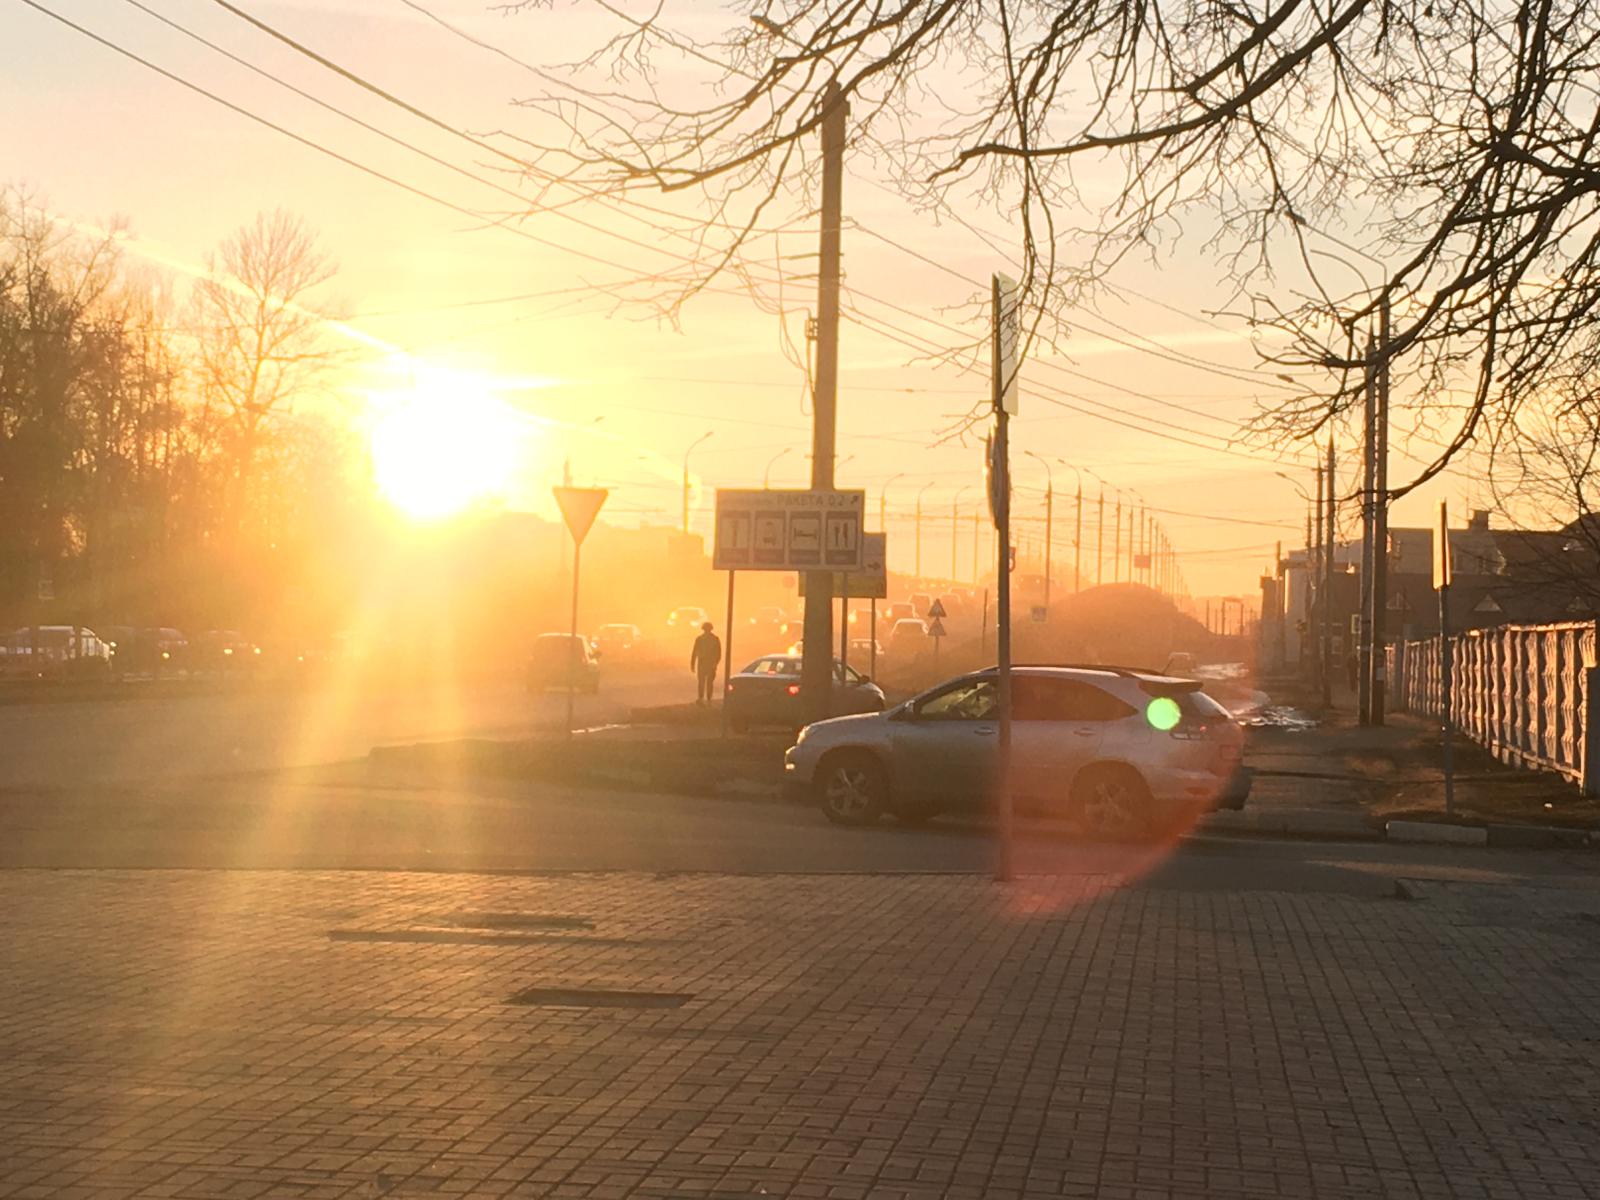 В Фокинском районе Брянска восстановили работу светофоров после аварии на подстанции